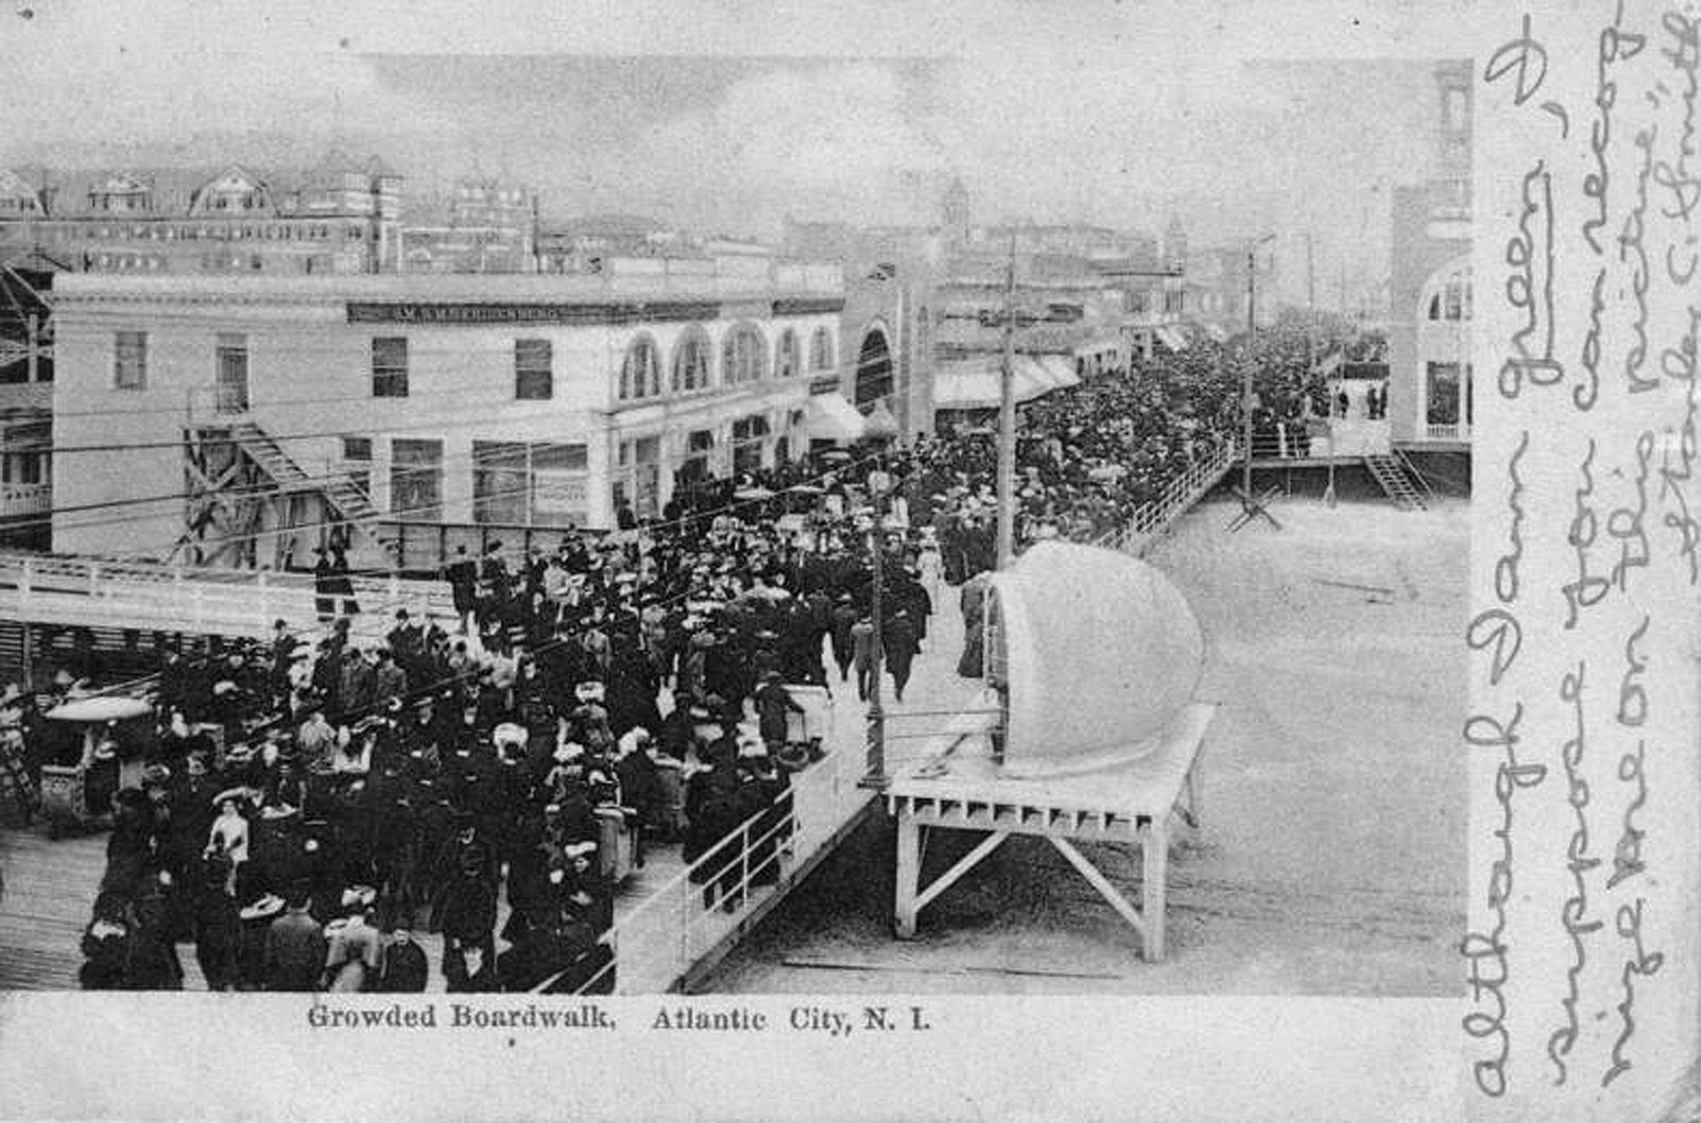 Atlantic City - A crowded boardwalk - 1905